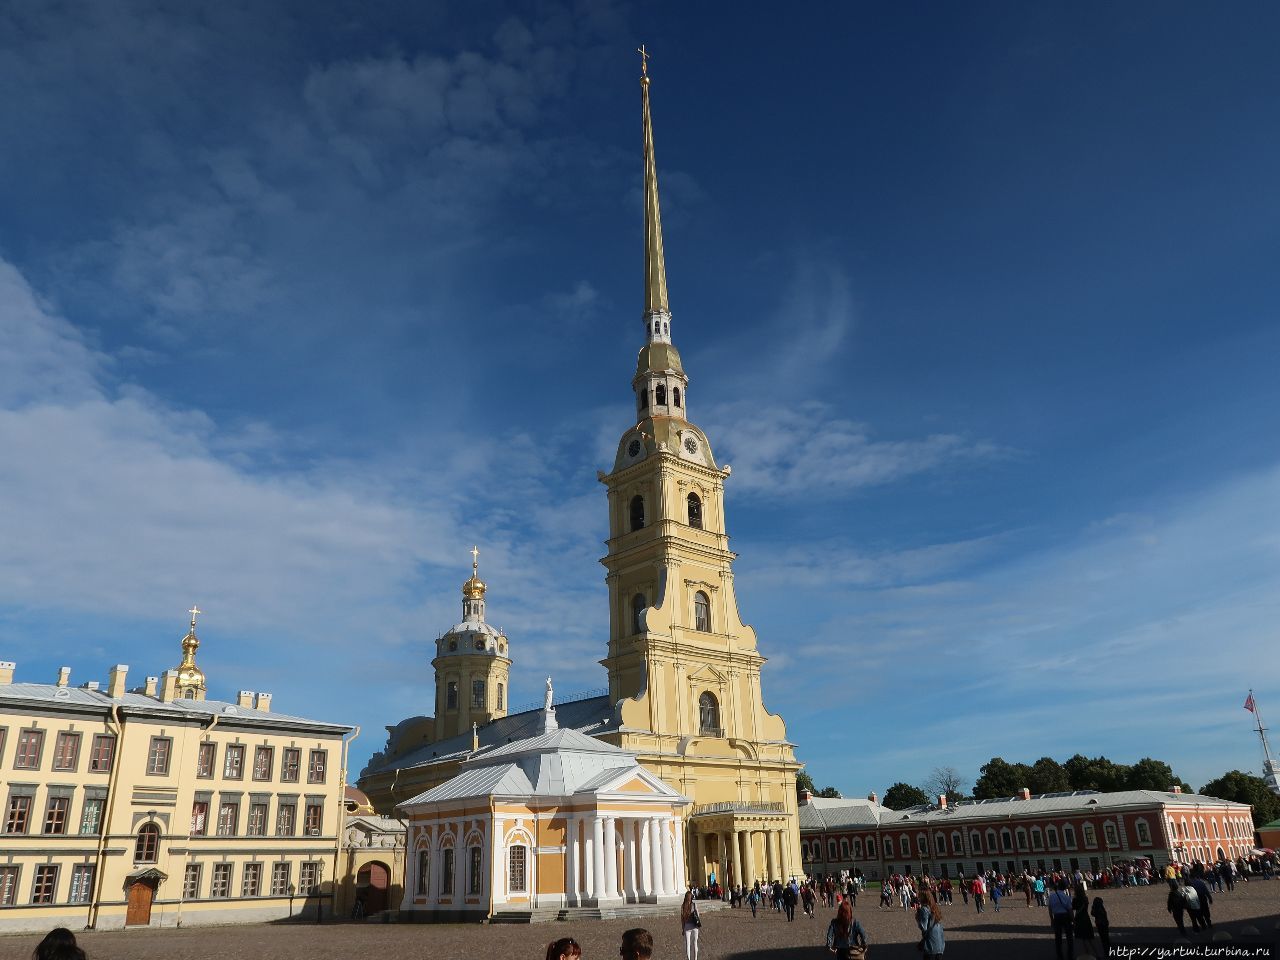 Ботный домик, Петропавловский собор и колокольня. Санкт-Петербург, Россия